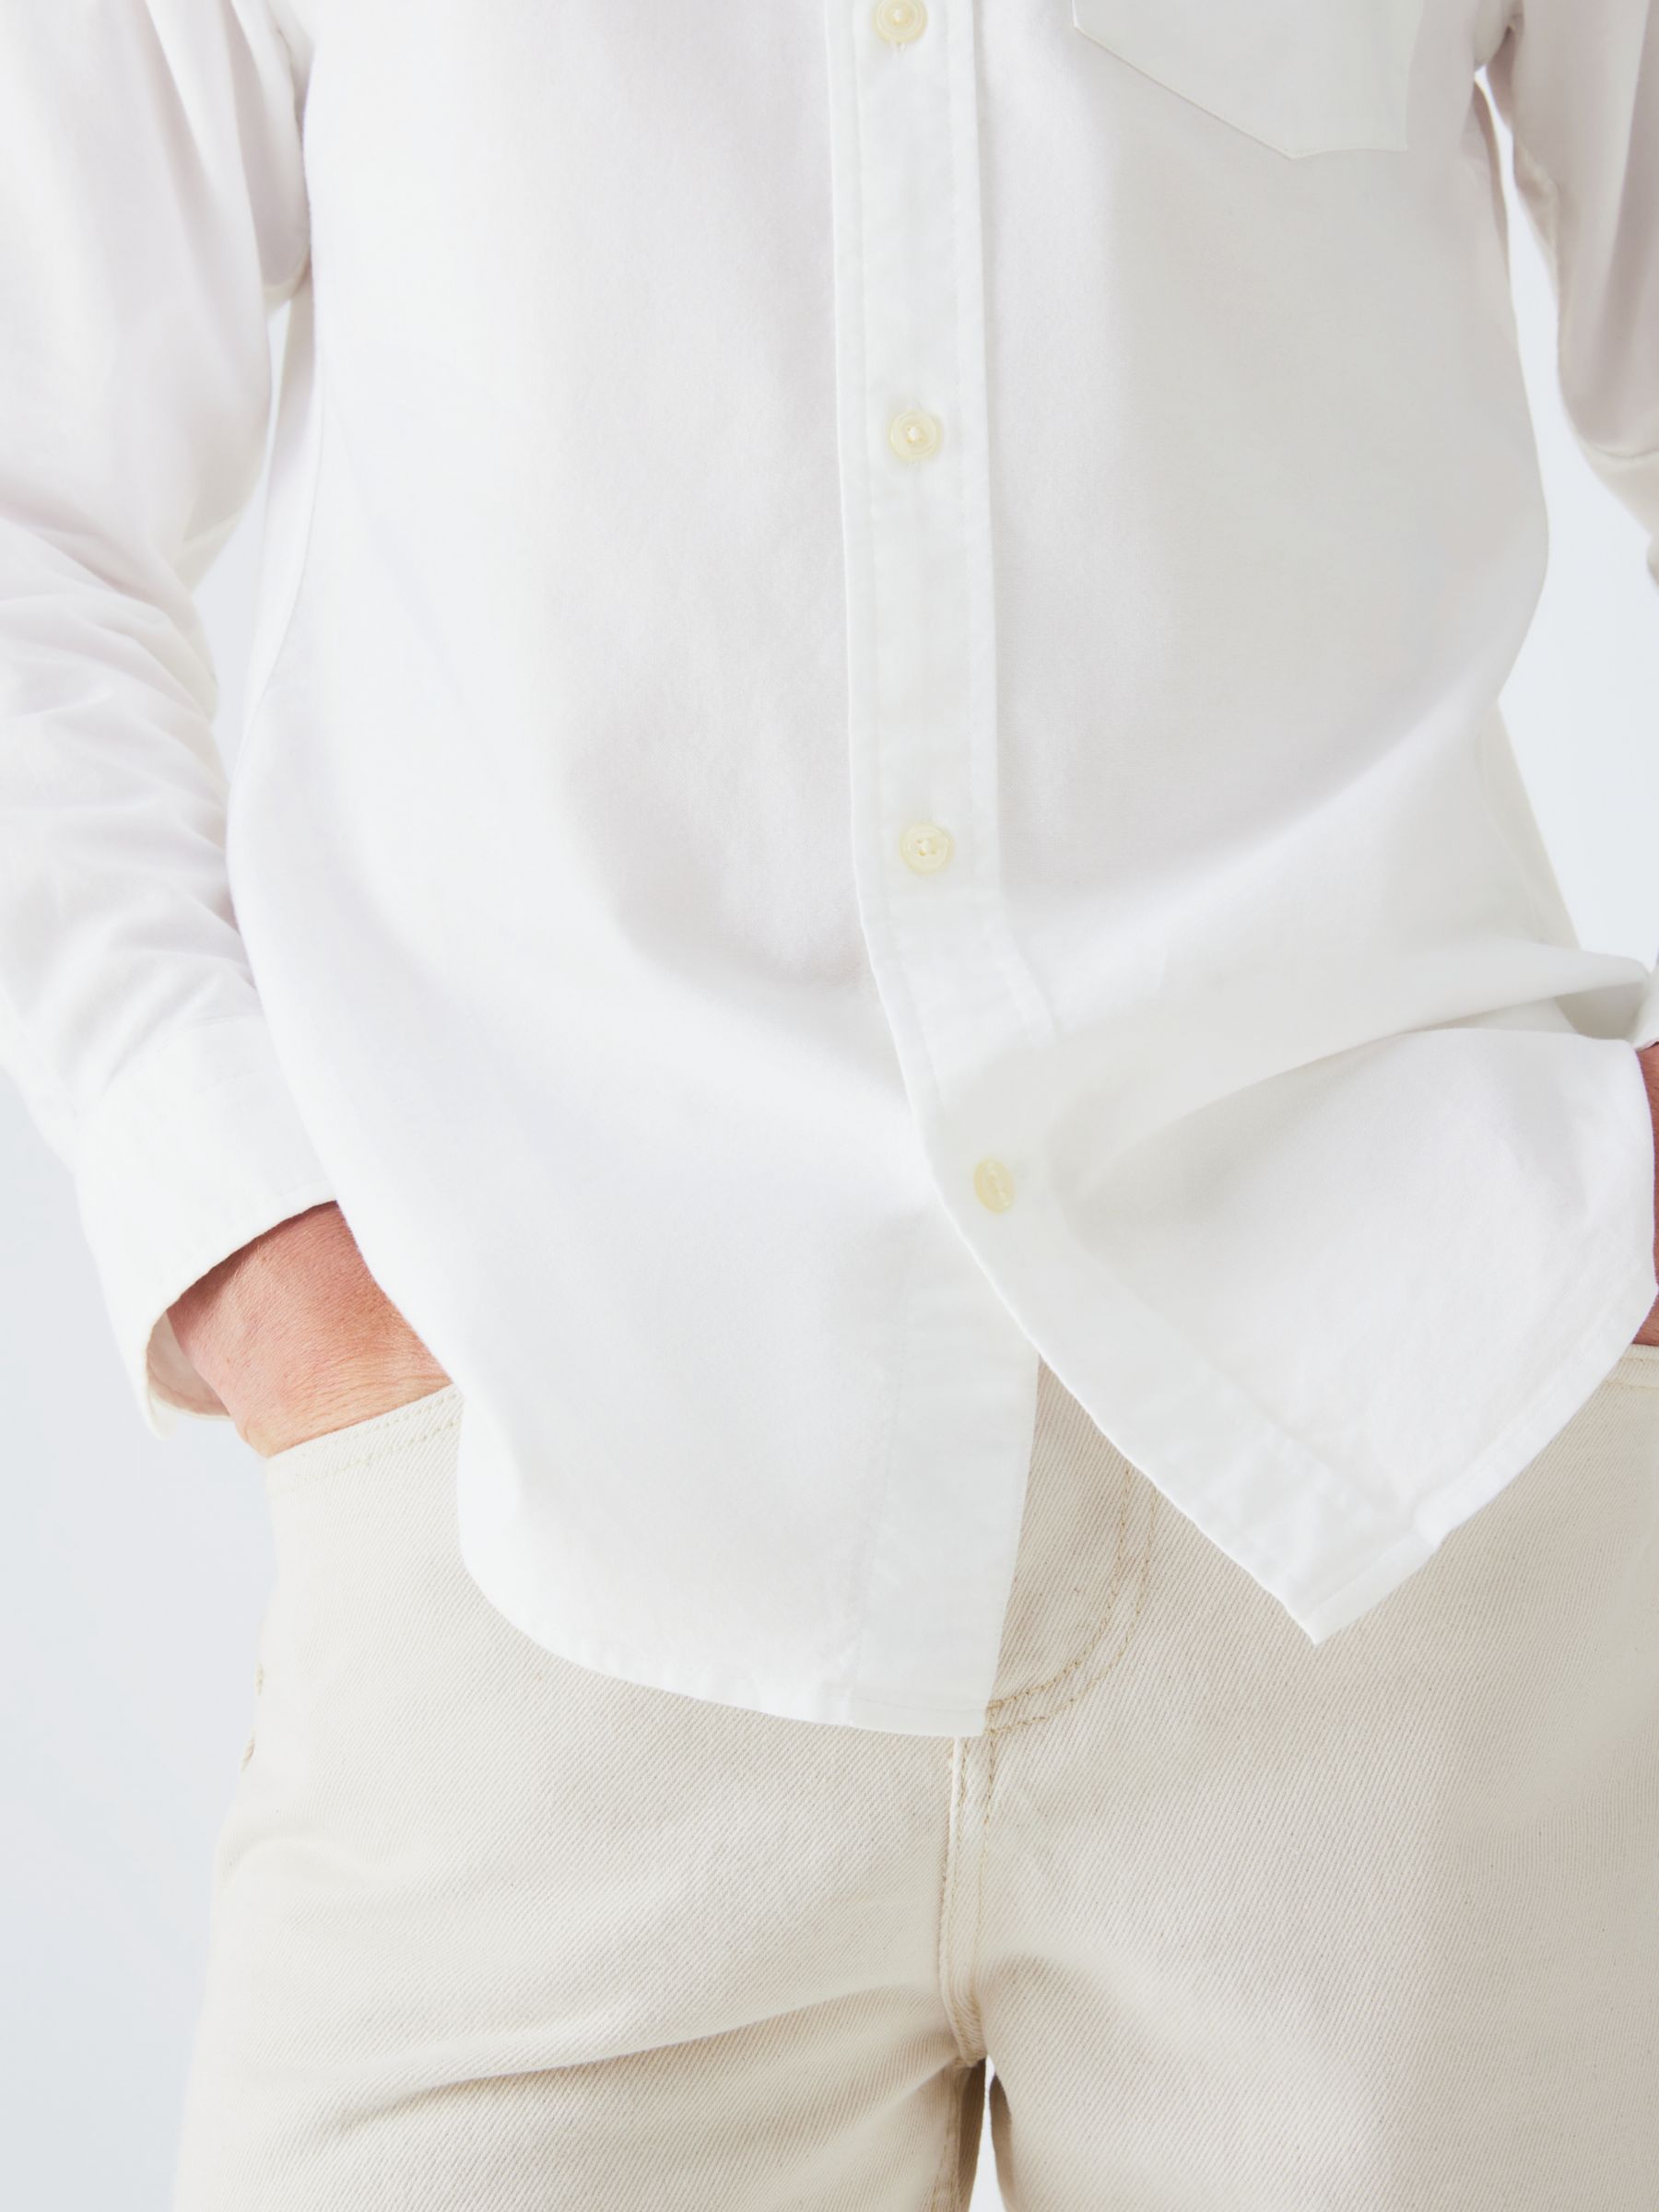 GANT Regular Fit Oxford Shirt, White at John Lewis & Partners